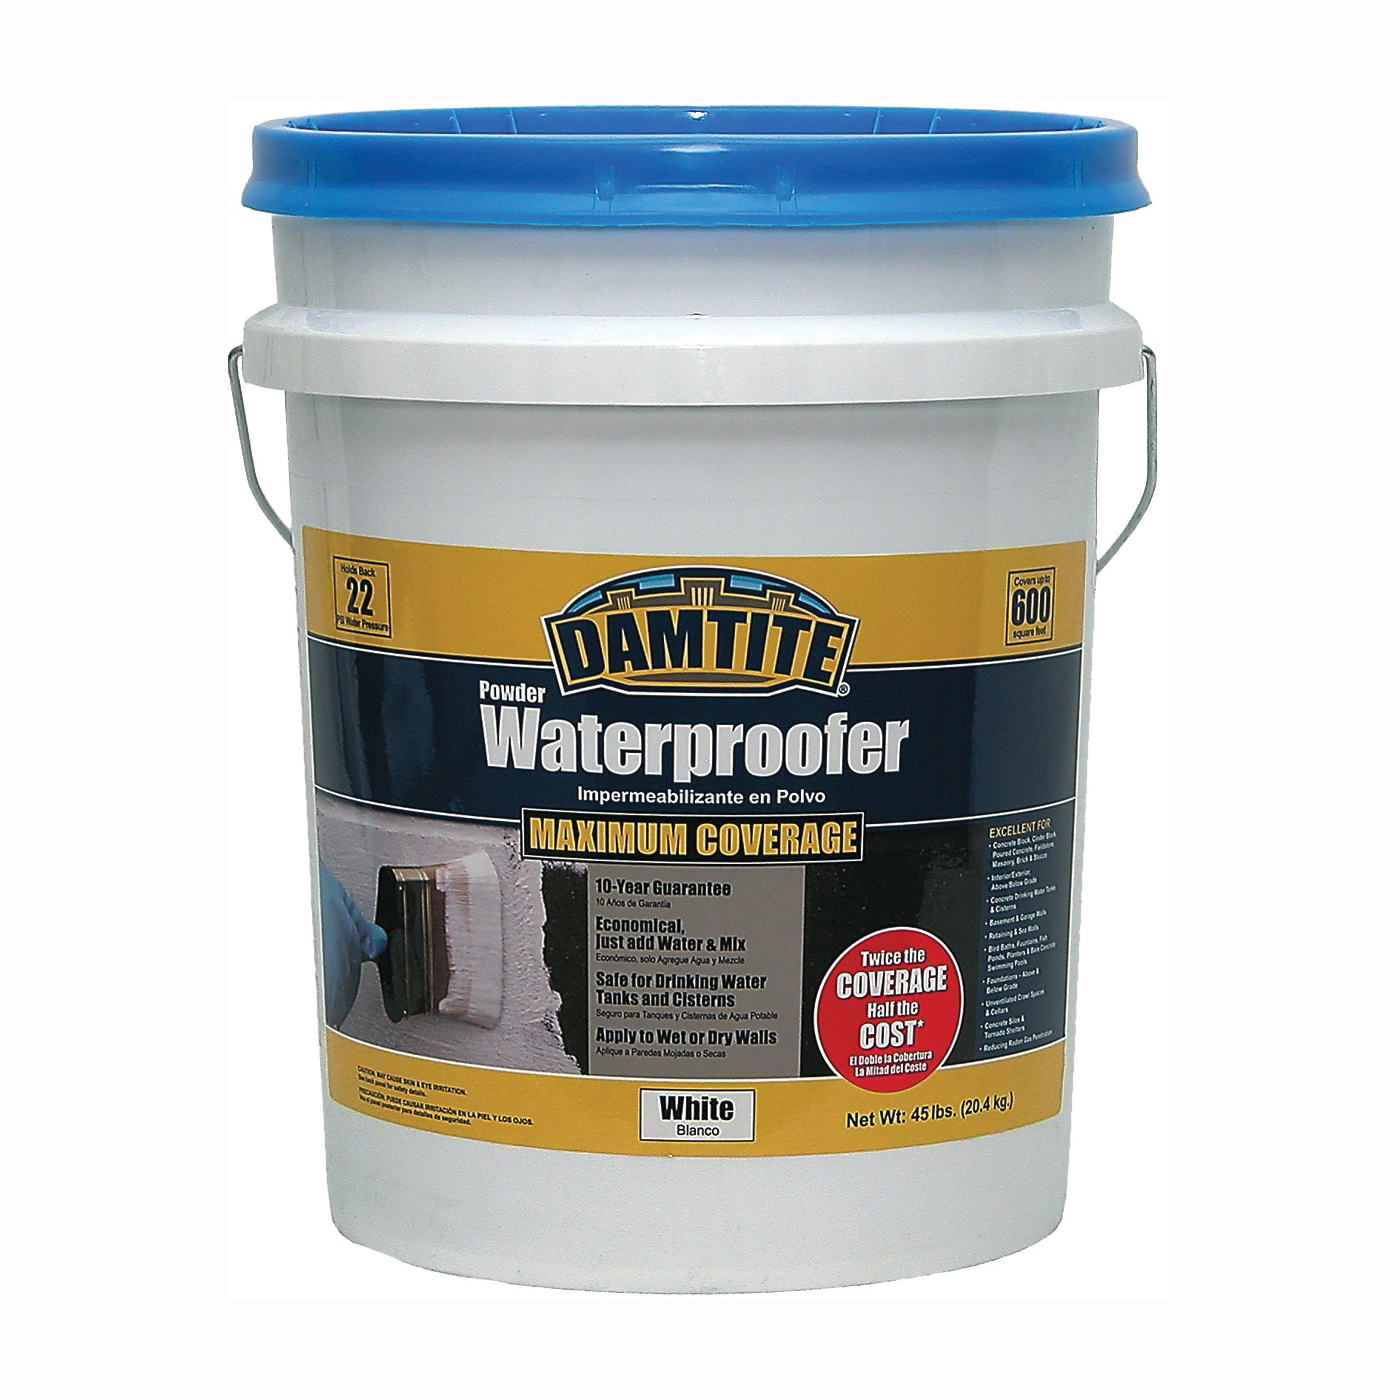 01451 Powder Waterproofer, White, Powder, 45 lb Pail